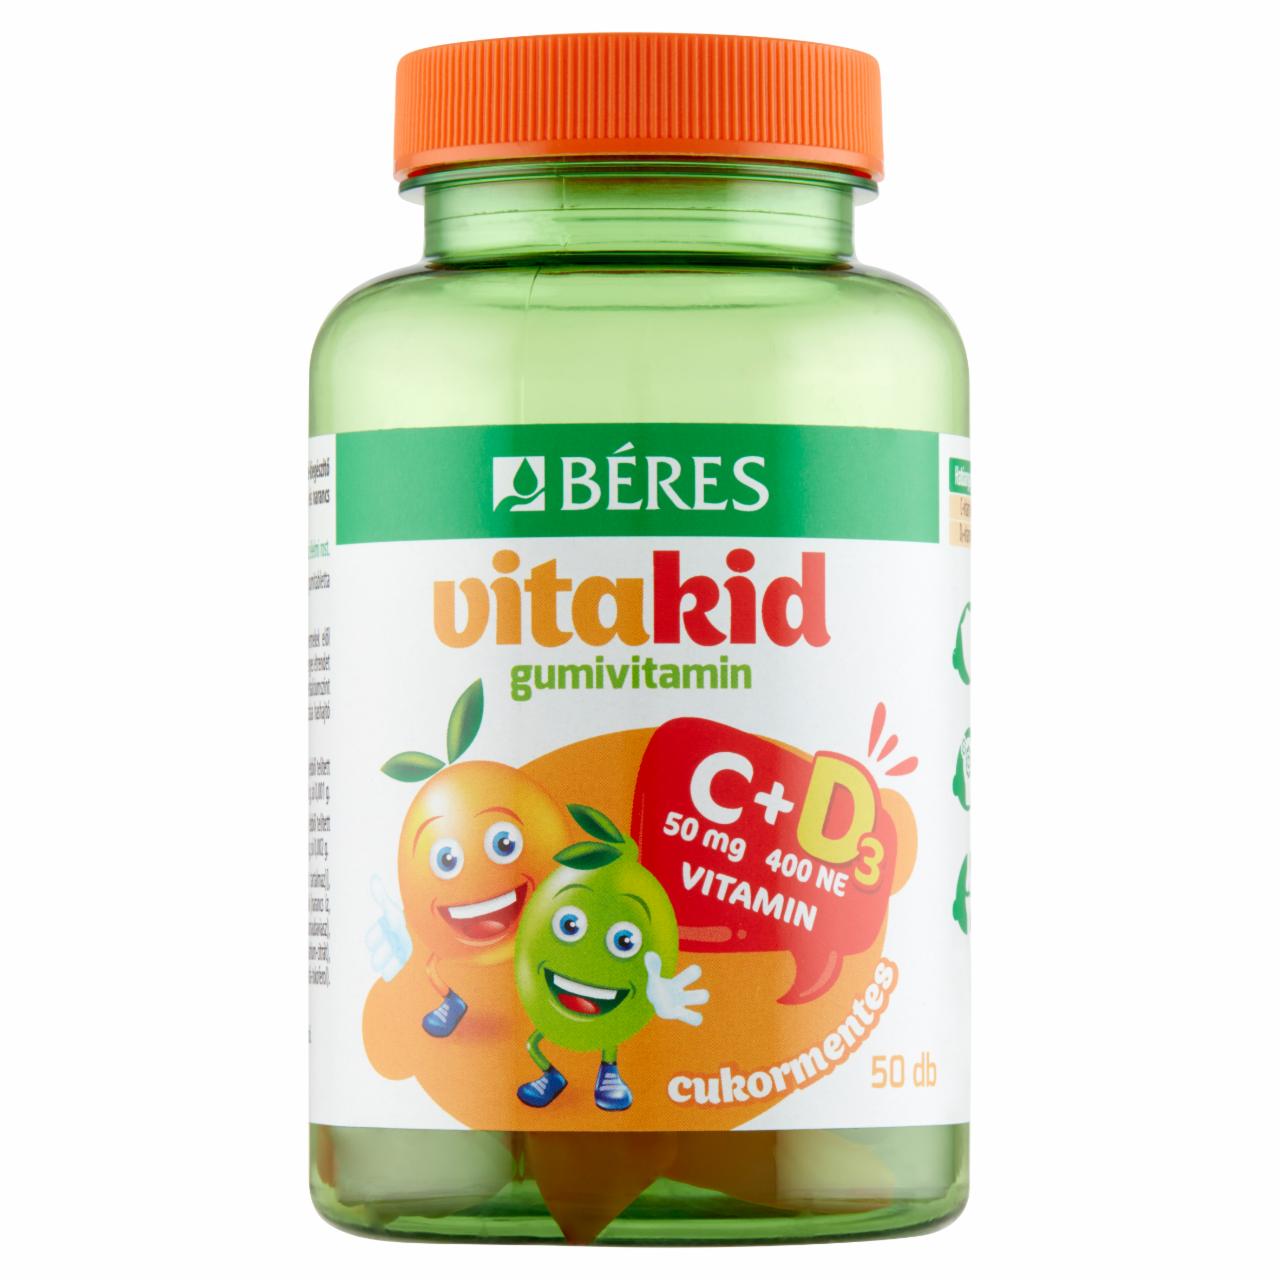 Képek - Béres VitaKid C 50 mg + 400 NE D3 cukormentes gumitabletta étrend-kiegészítő 50 x 2,99 g (150 g)